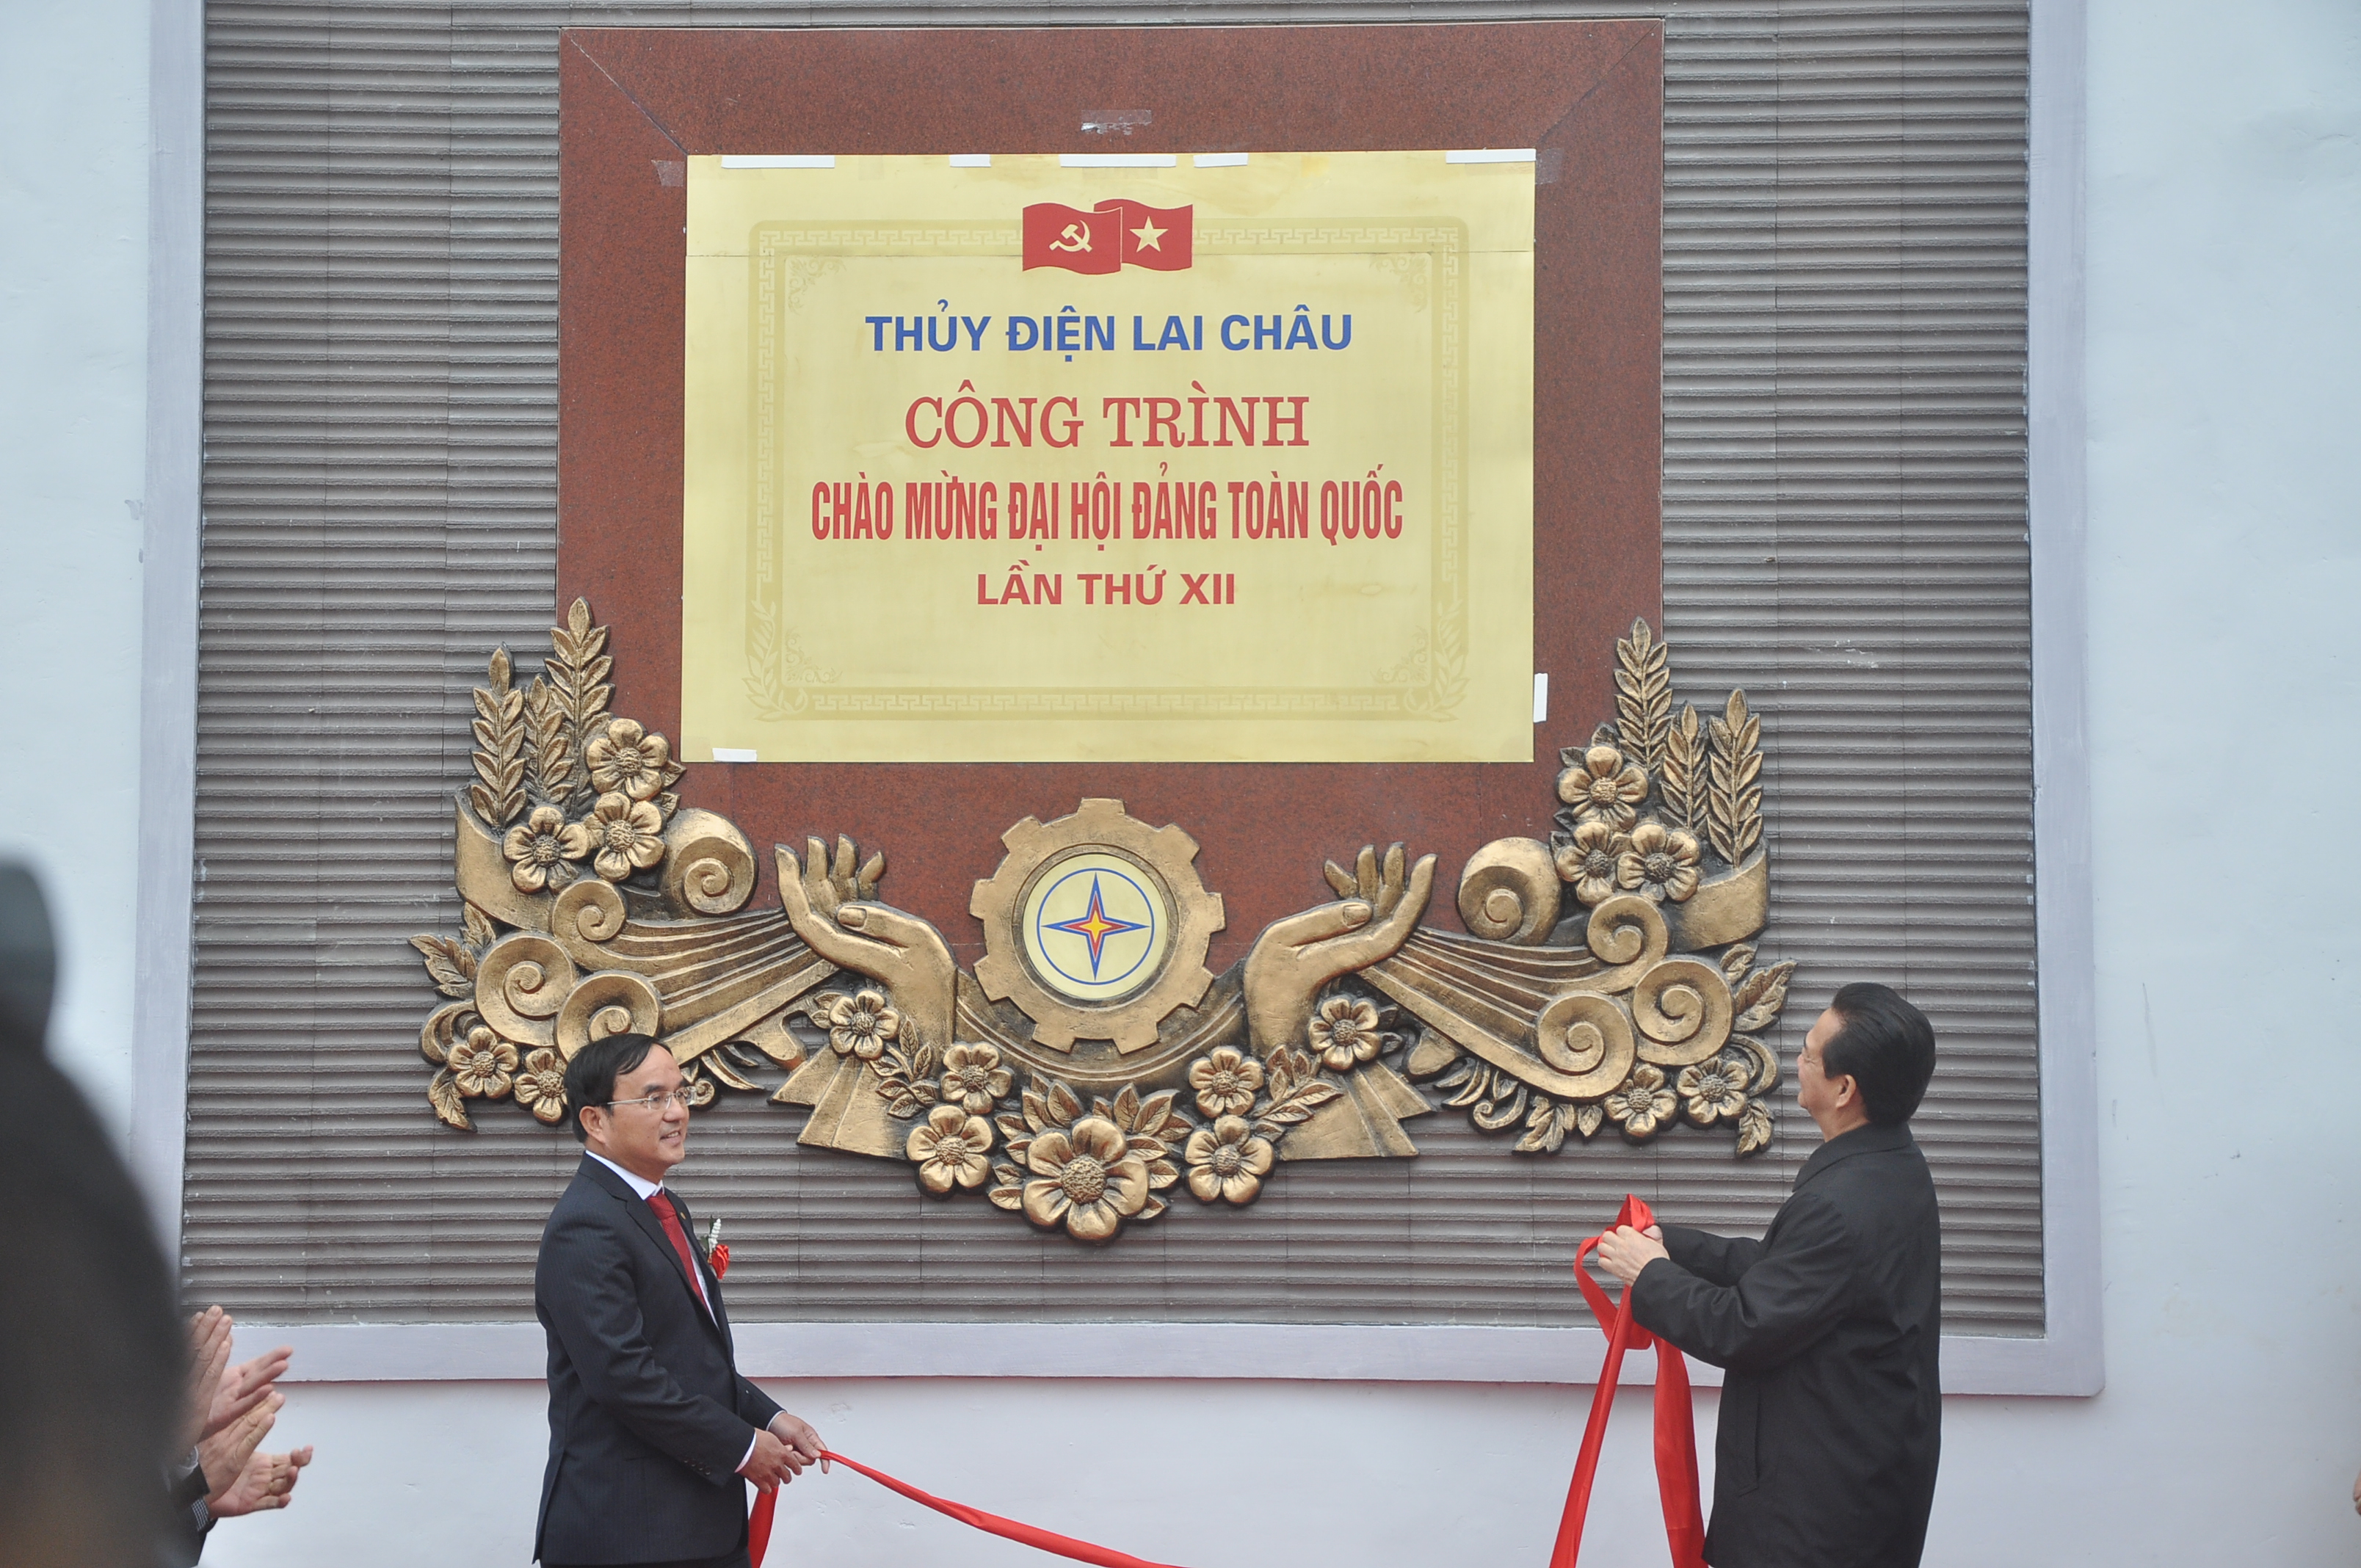 Công trình Nhà máy Thủy điện Lai Châu được gắn biển là công trình Chào mừng Đại hội Đảng toàn quốc lần thứ XII năm sắp tới.